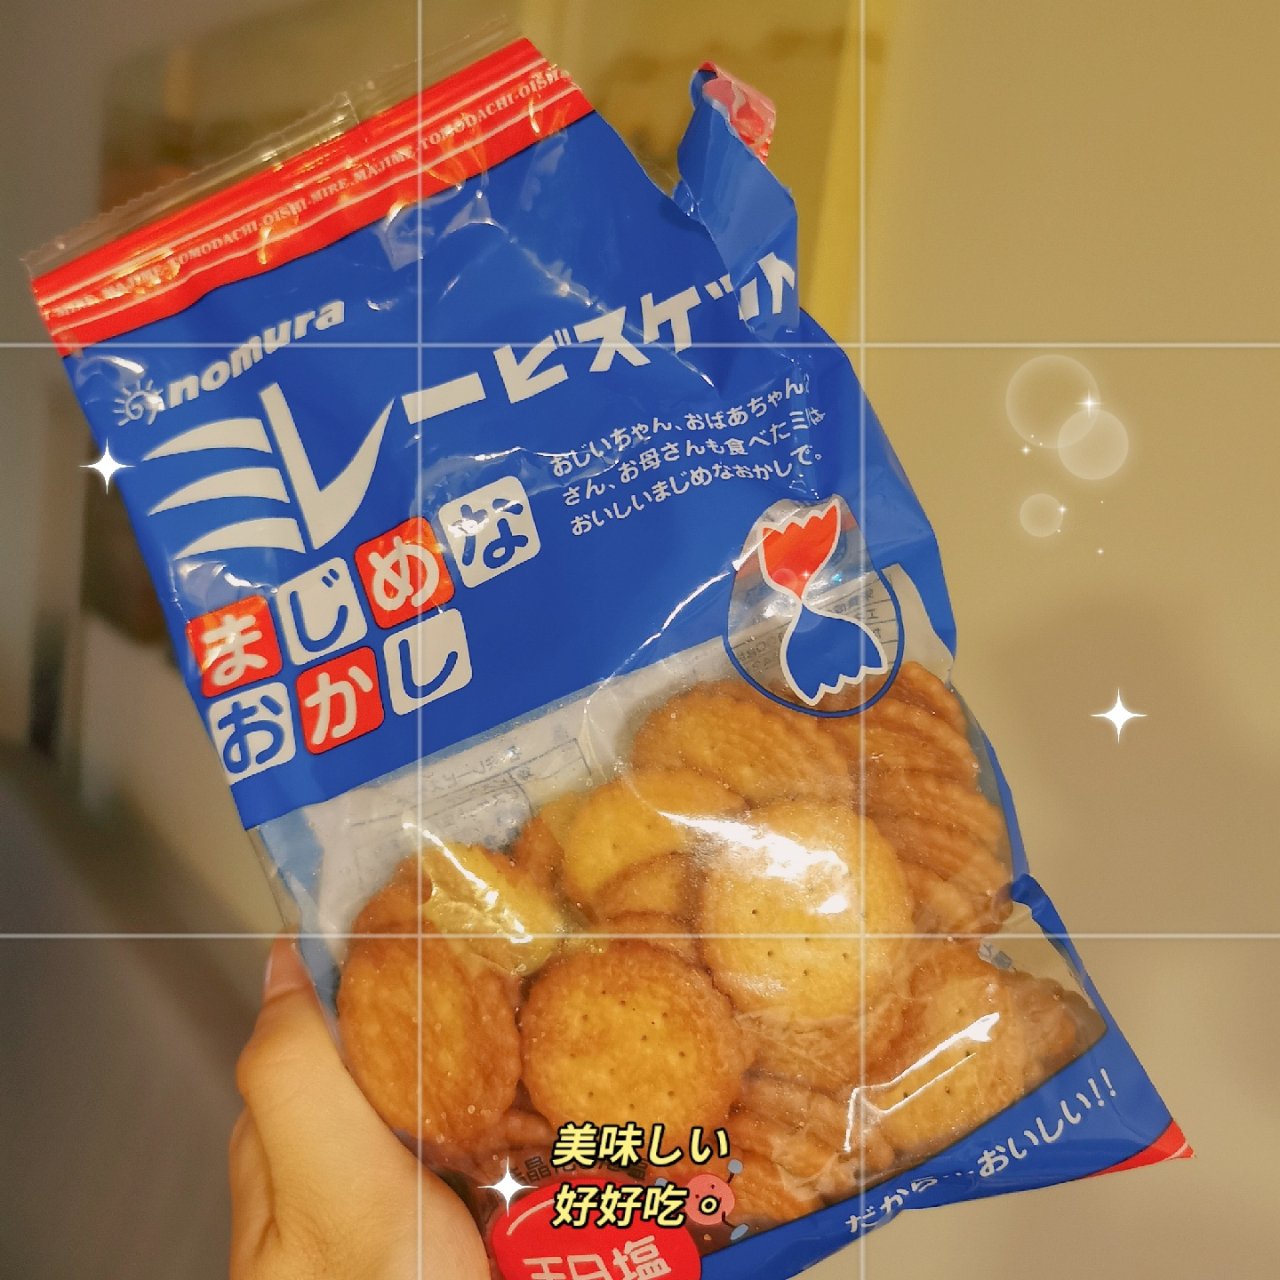 强推Nomura小饼干♥网红产品...